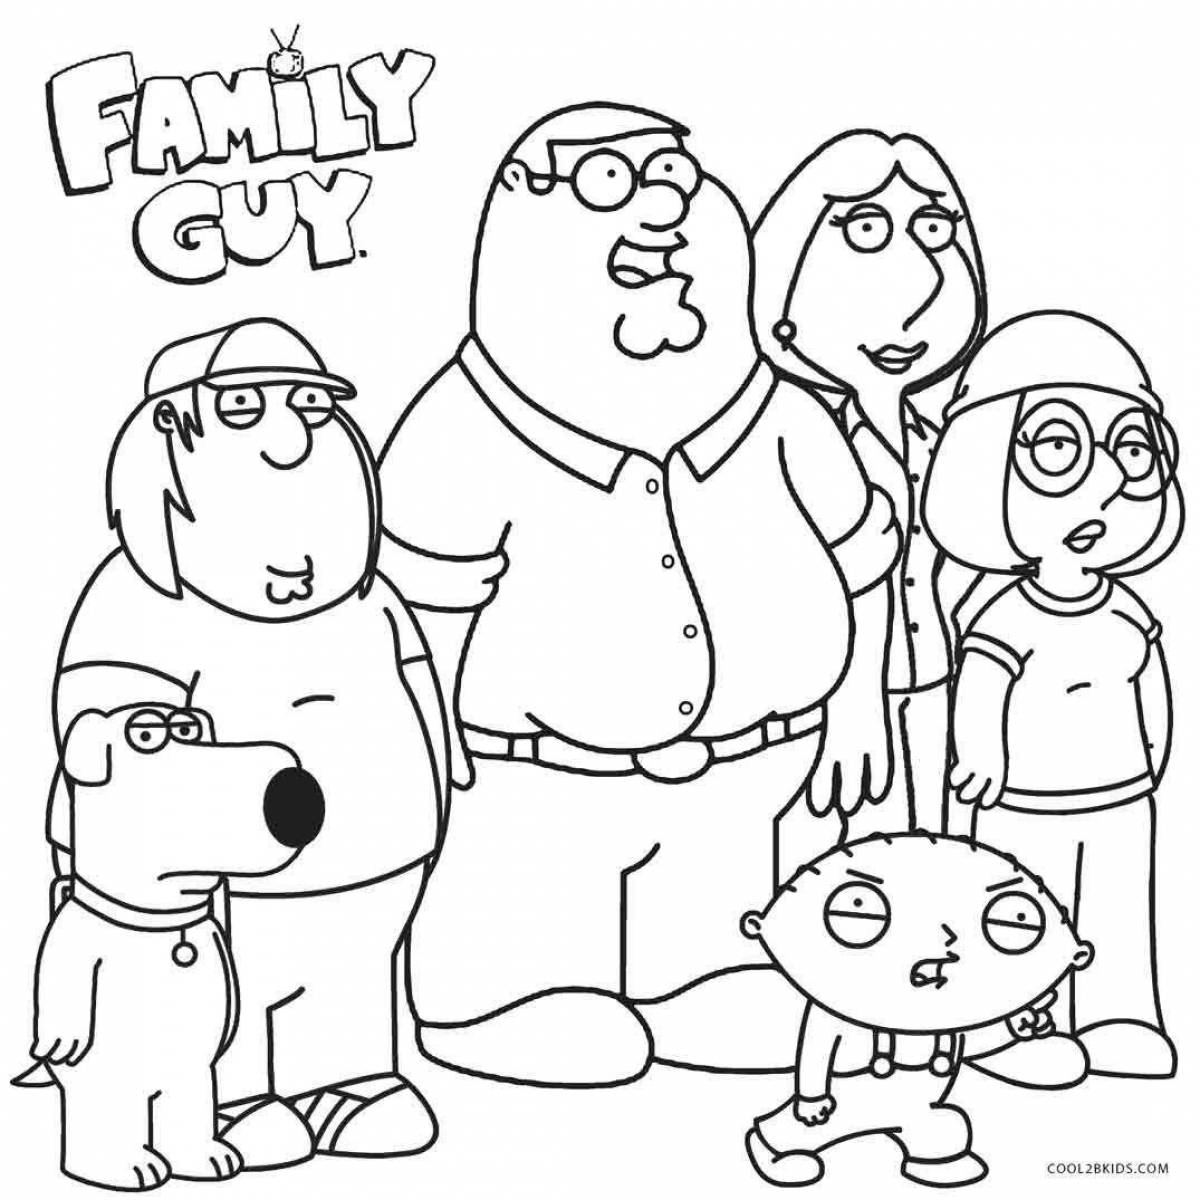 Humorous metal family coloring book